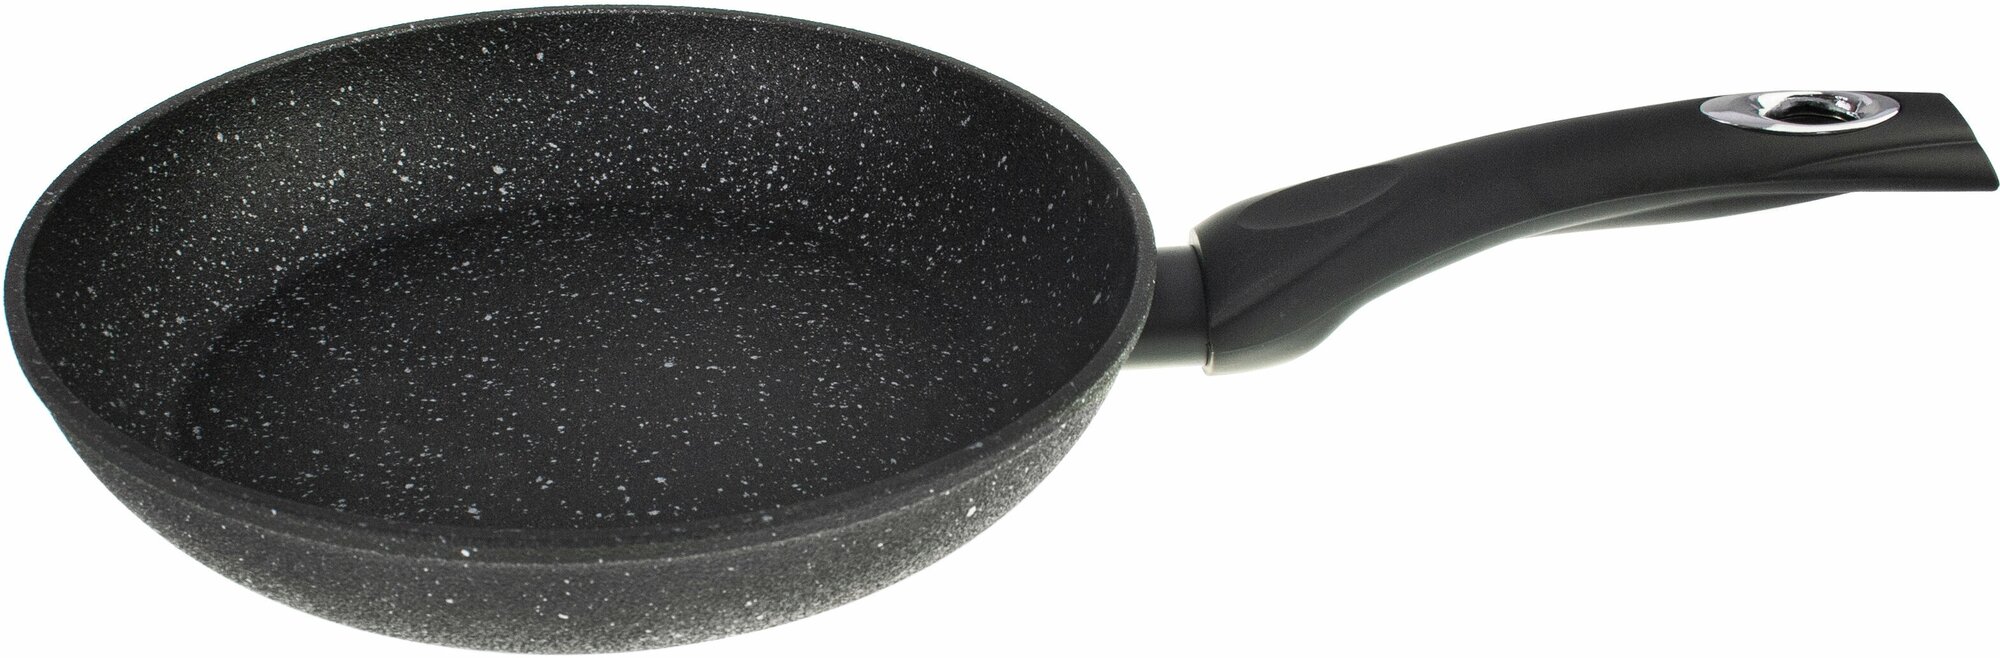 Сковорода с антипригарным покрытием для индукционной плиты из кованого алюминия 28 см Black Stone PROFFI Hoff - фото №2